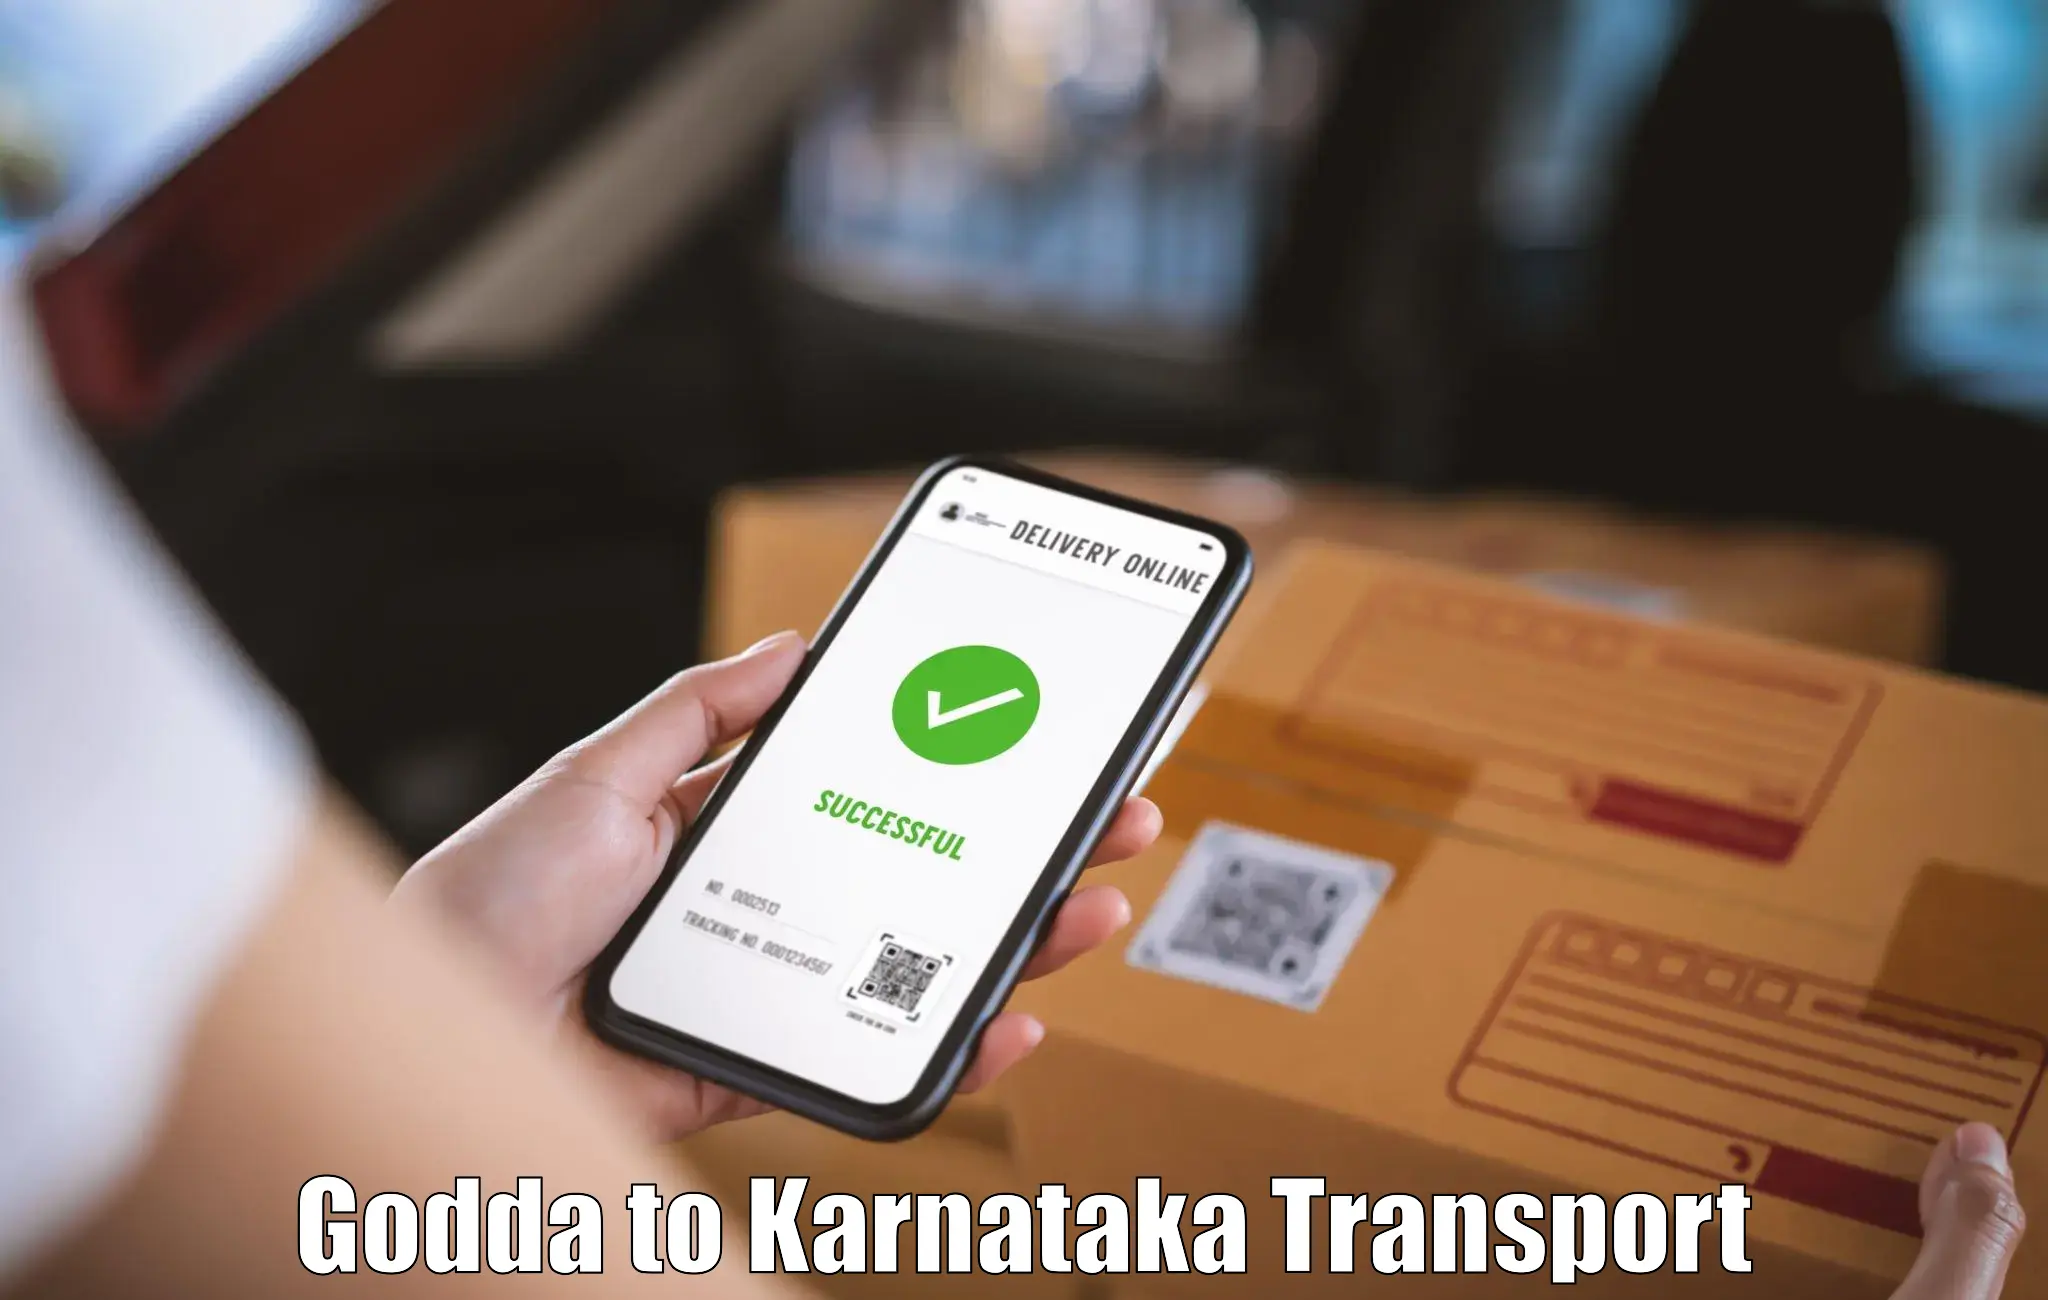 Goods delivery service Godda to Kudligi